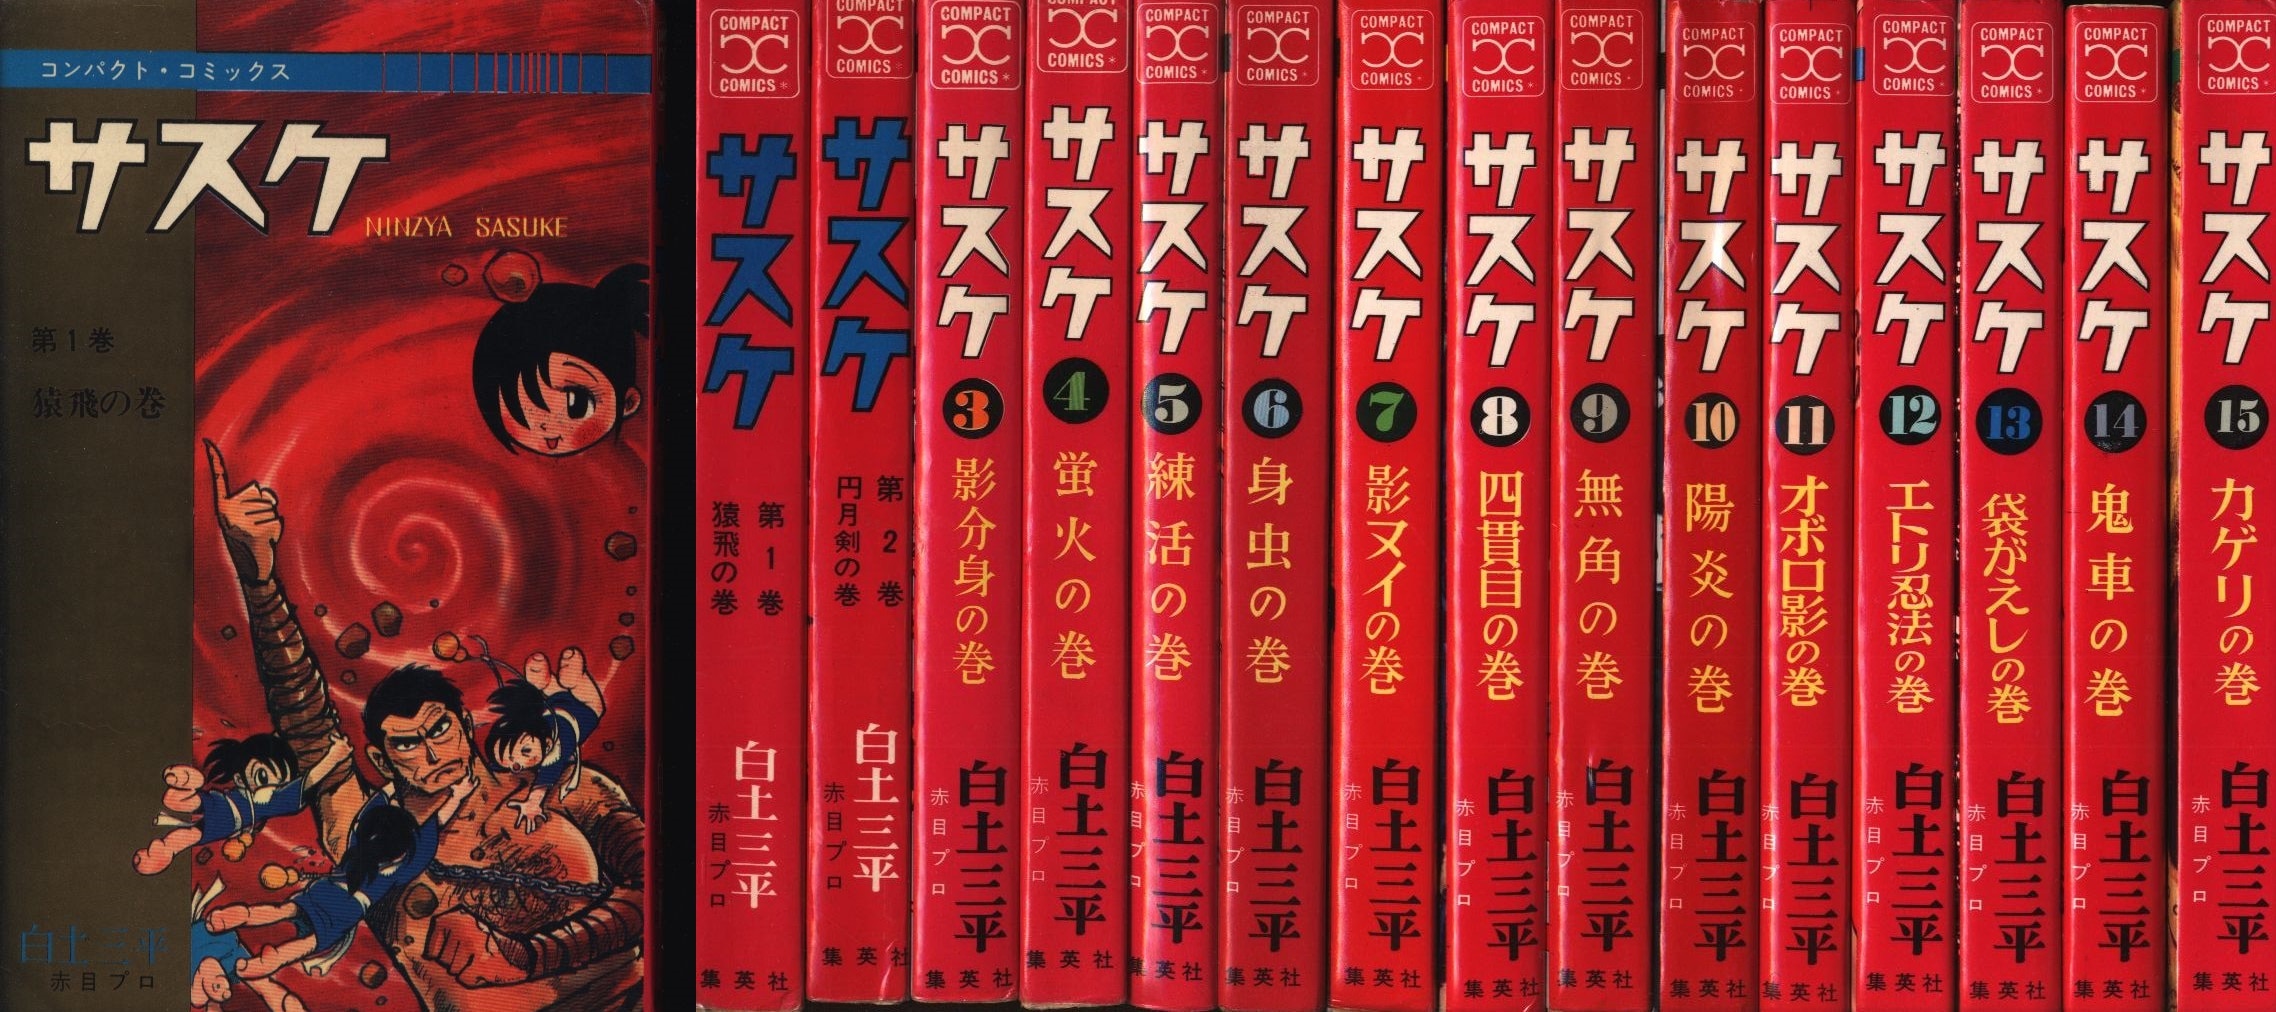 集英社 コンパクトコミック 白土三平 サスケ全15巻 再版セット 